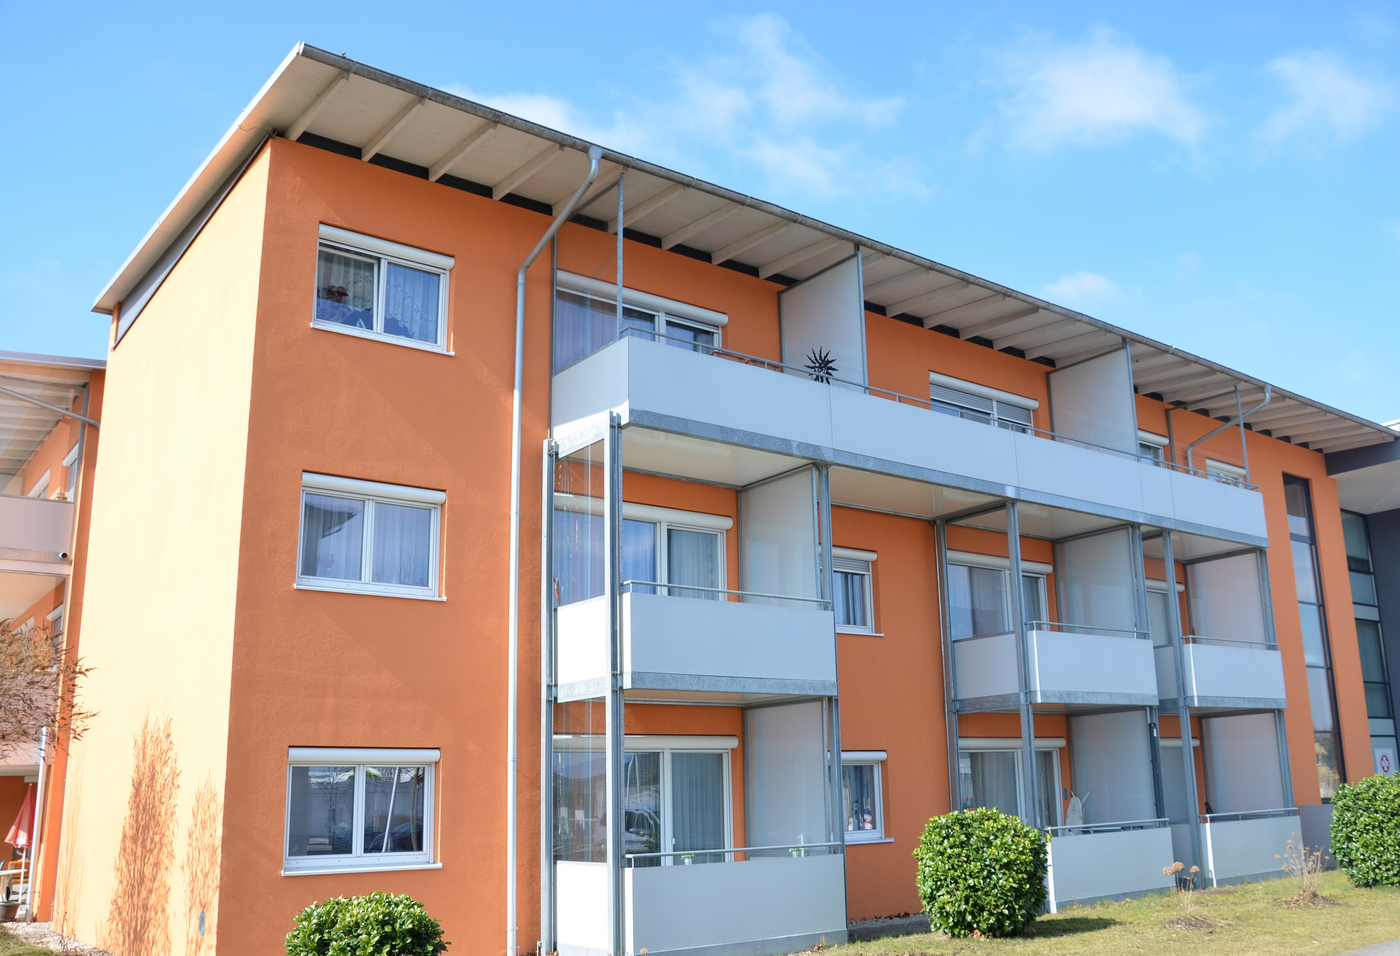 Oranger Wohnblock mit weißen Balkonen